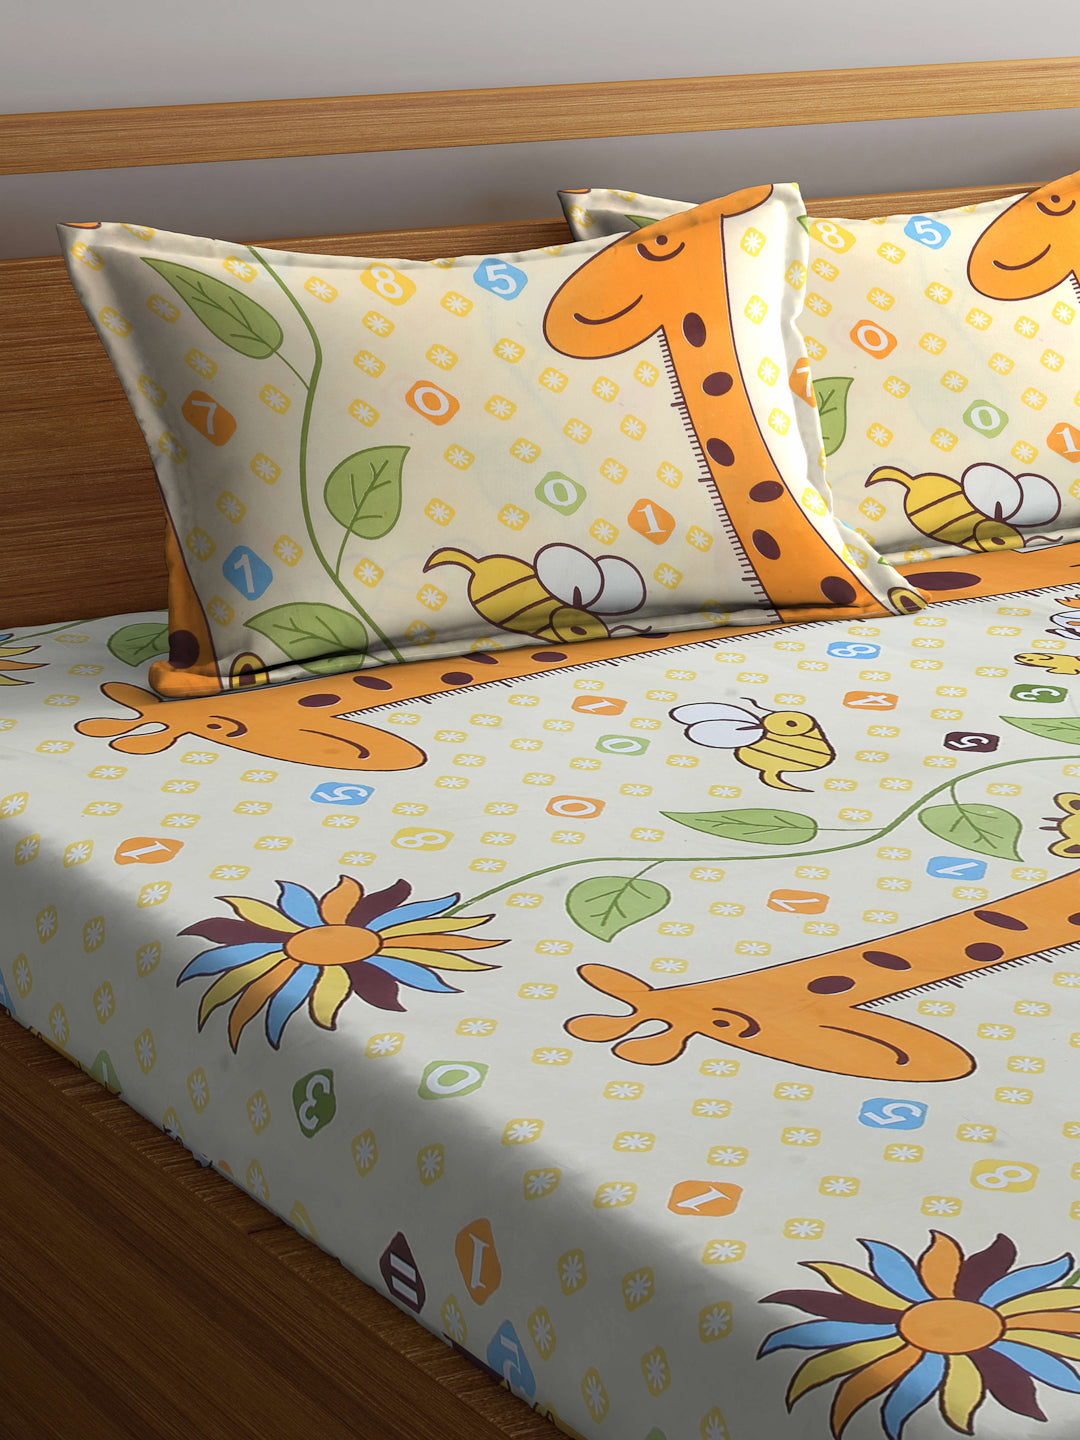 Arrabi Multi Cartoon TC Cotton Blend Double Size Bedsheet with 2 Pillow Covers (250 x 215 cm)